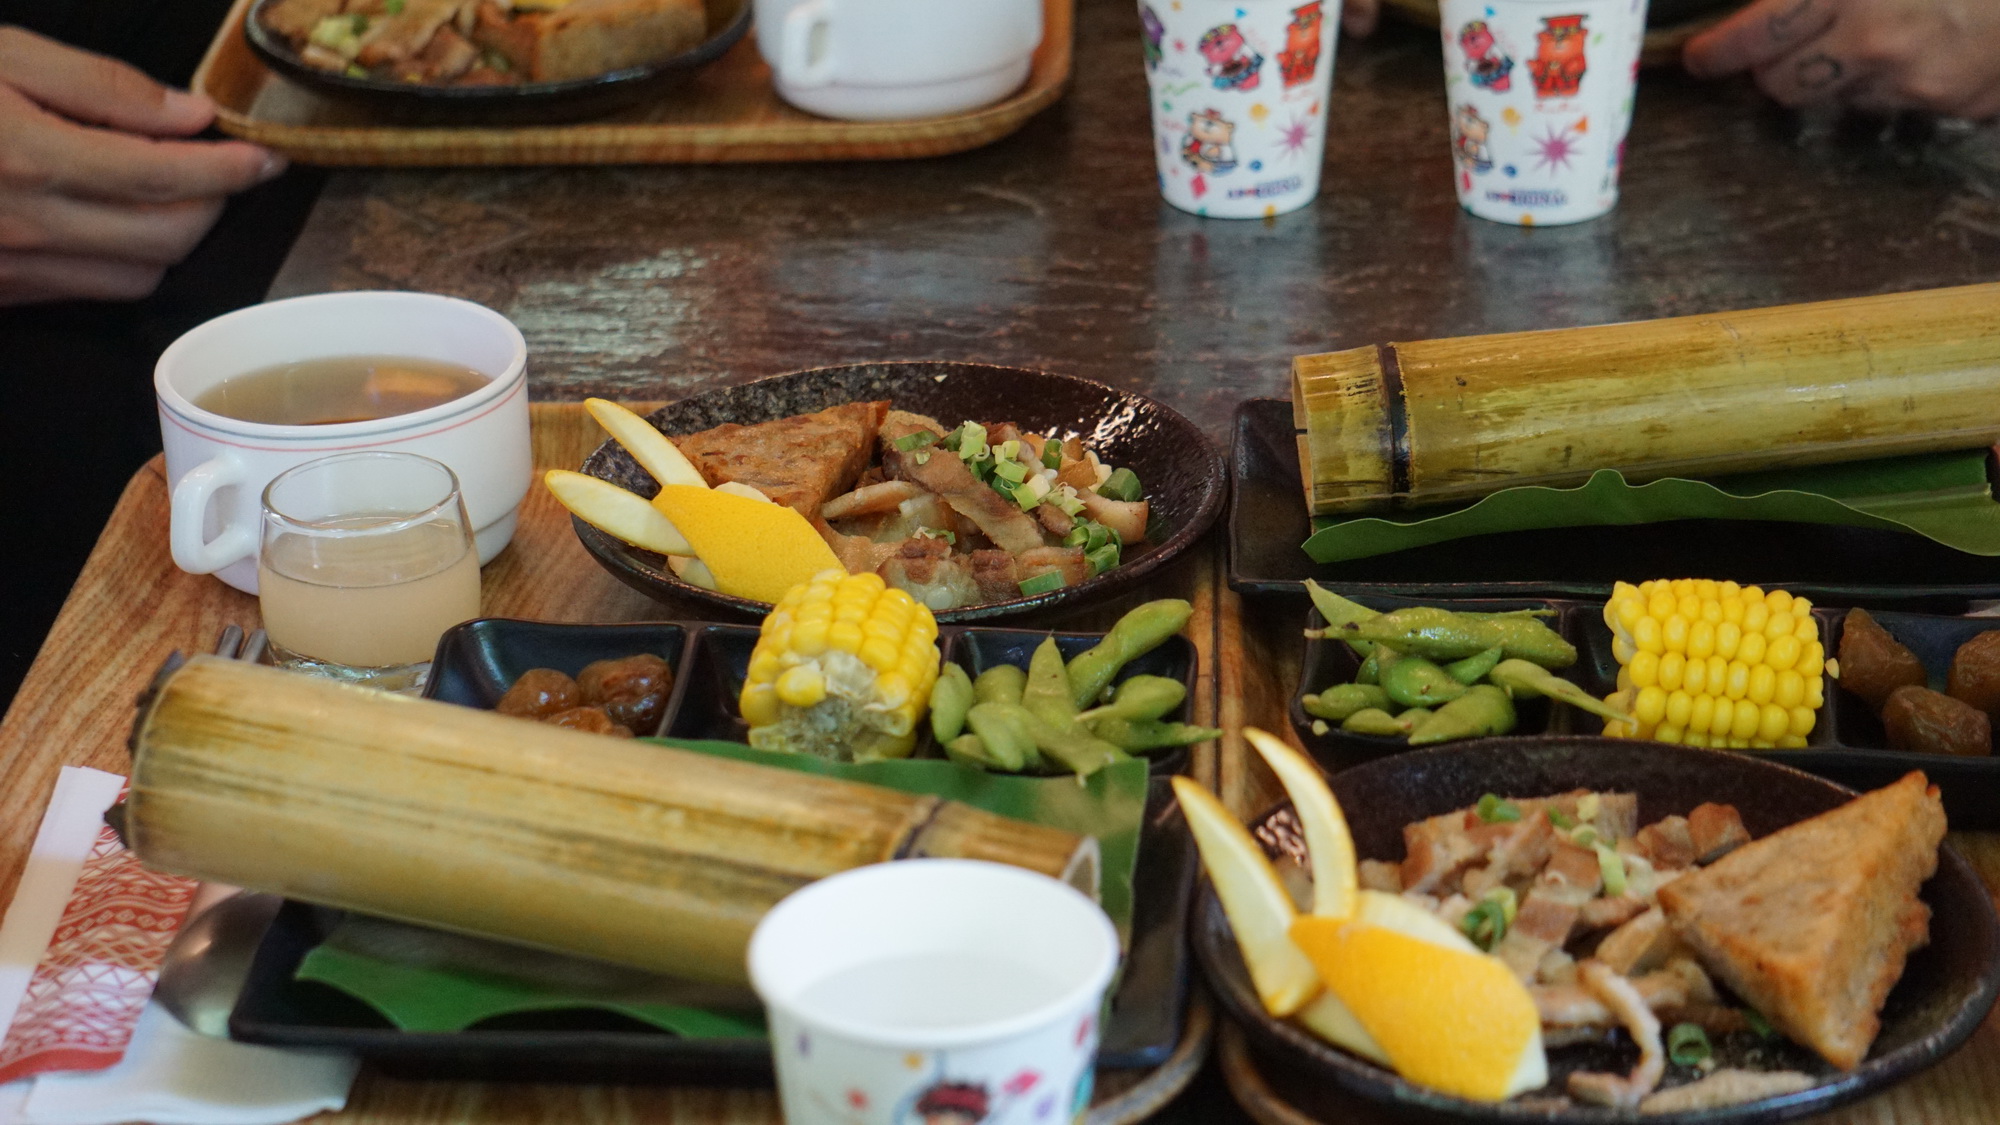 Du khách thưởng thức bữa trưa đậm chất miền sơn cước tại Làng Cửu tộc gồm các món chính như rượu hoa quả, ngô, đậu luộc, thịt lợn quay ba chỉ. (Ảnh: Trần Long/Vietnam+)